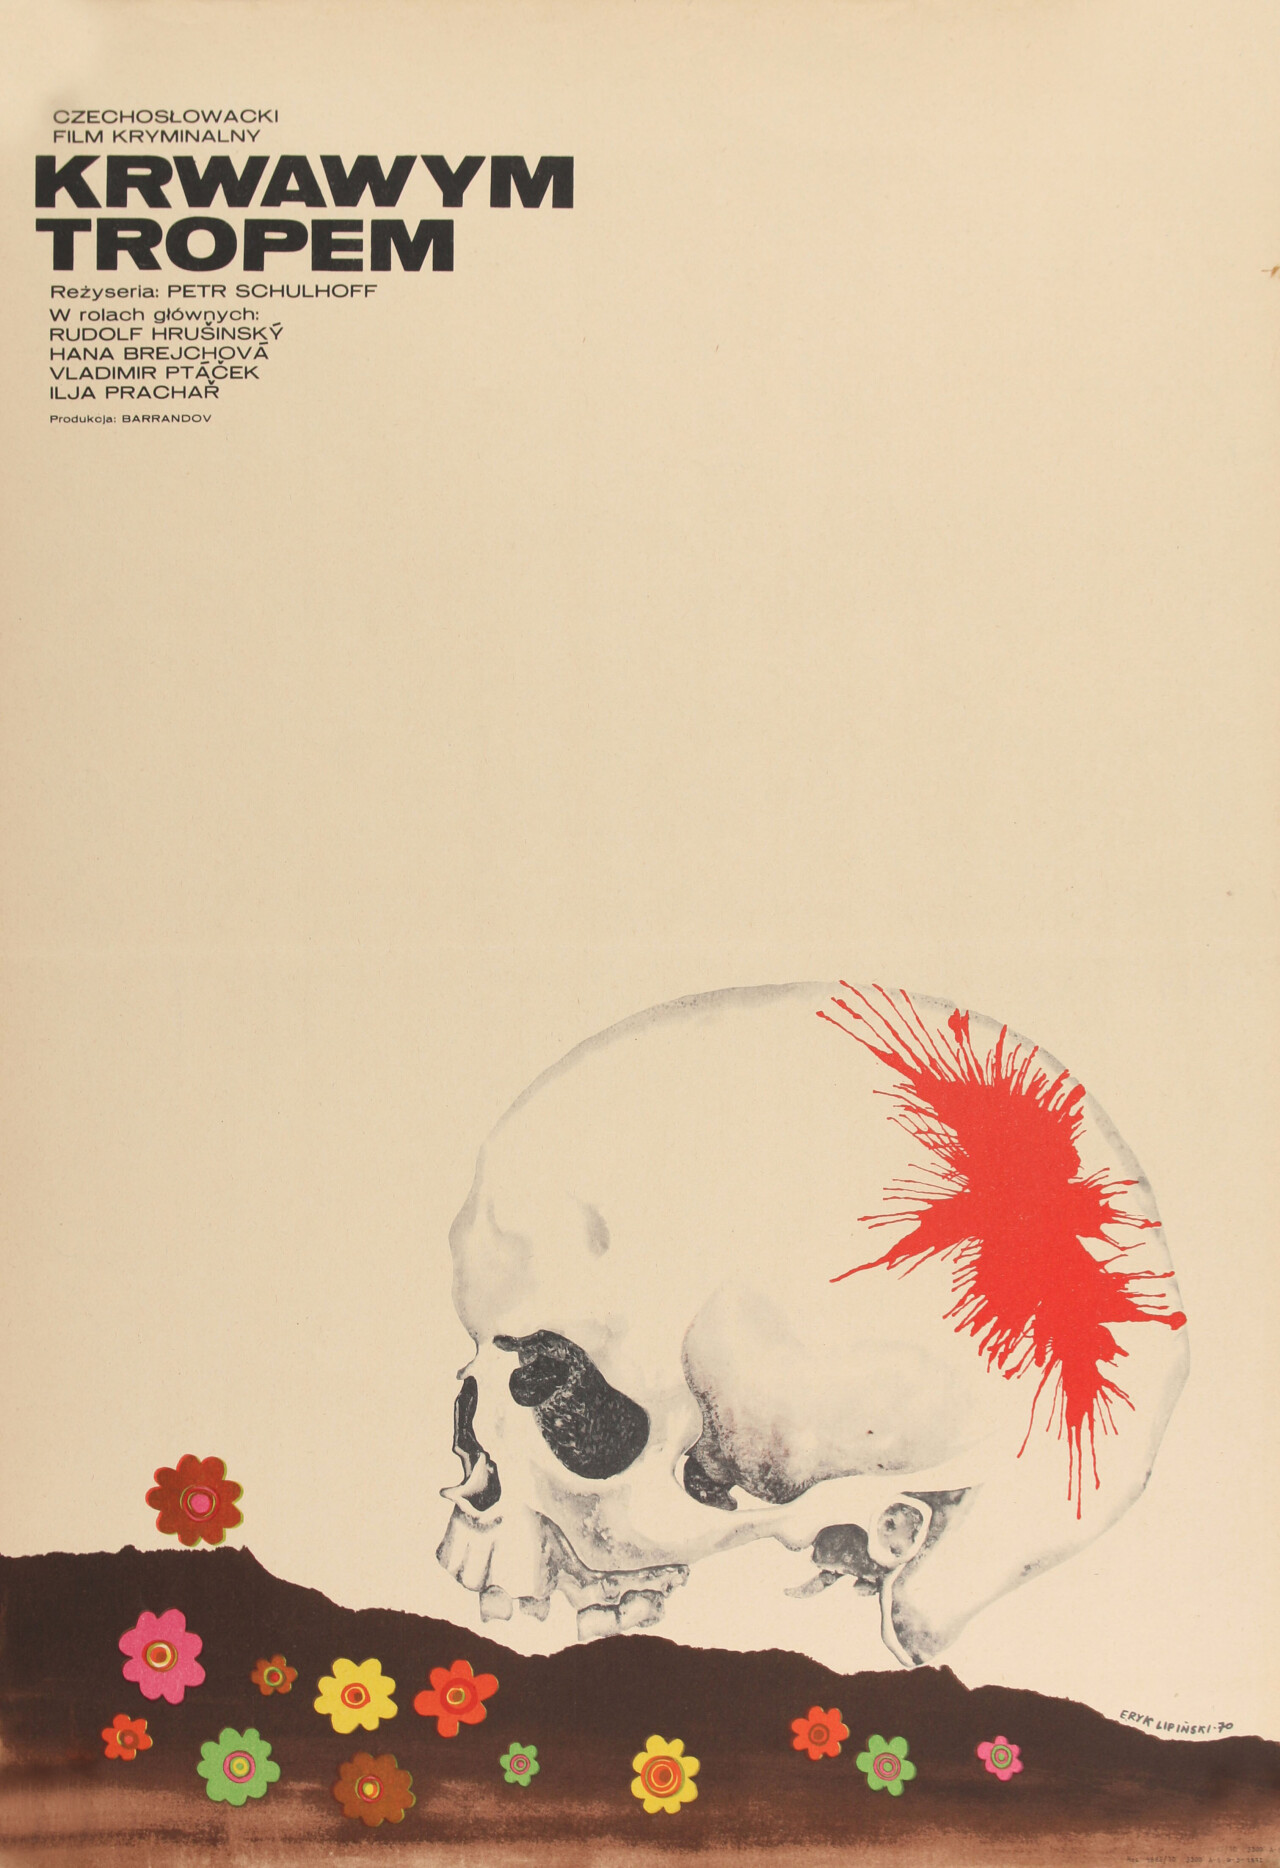 По кровавым следам (Po stopach krve, 1970), режиссёр Петр Шульхофф, польский постер к фильму, автор Эрик Липински (графический дизайн, 1970 год)